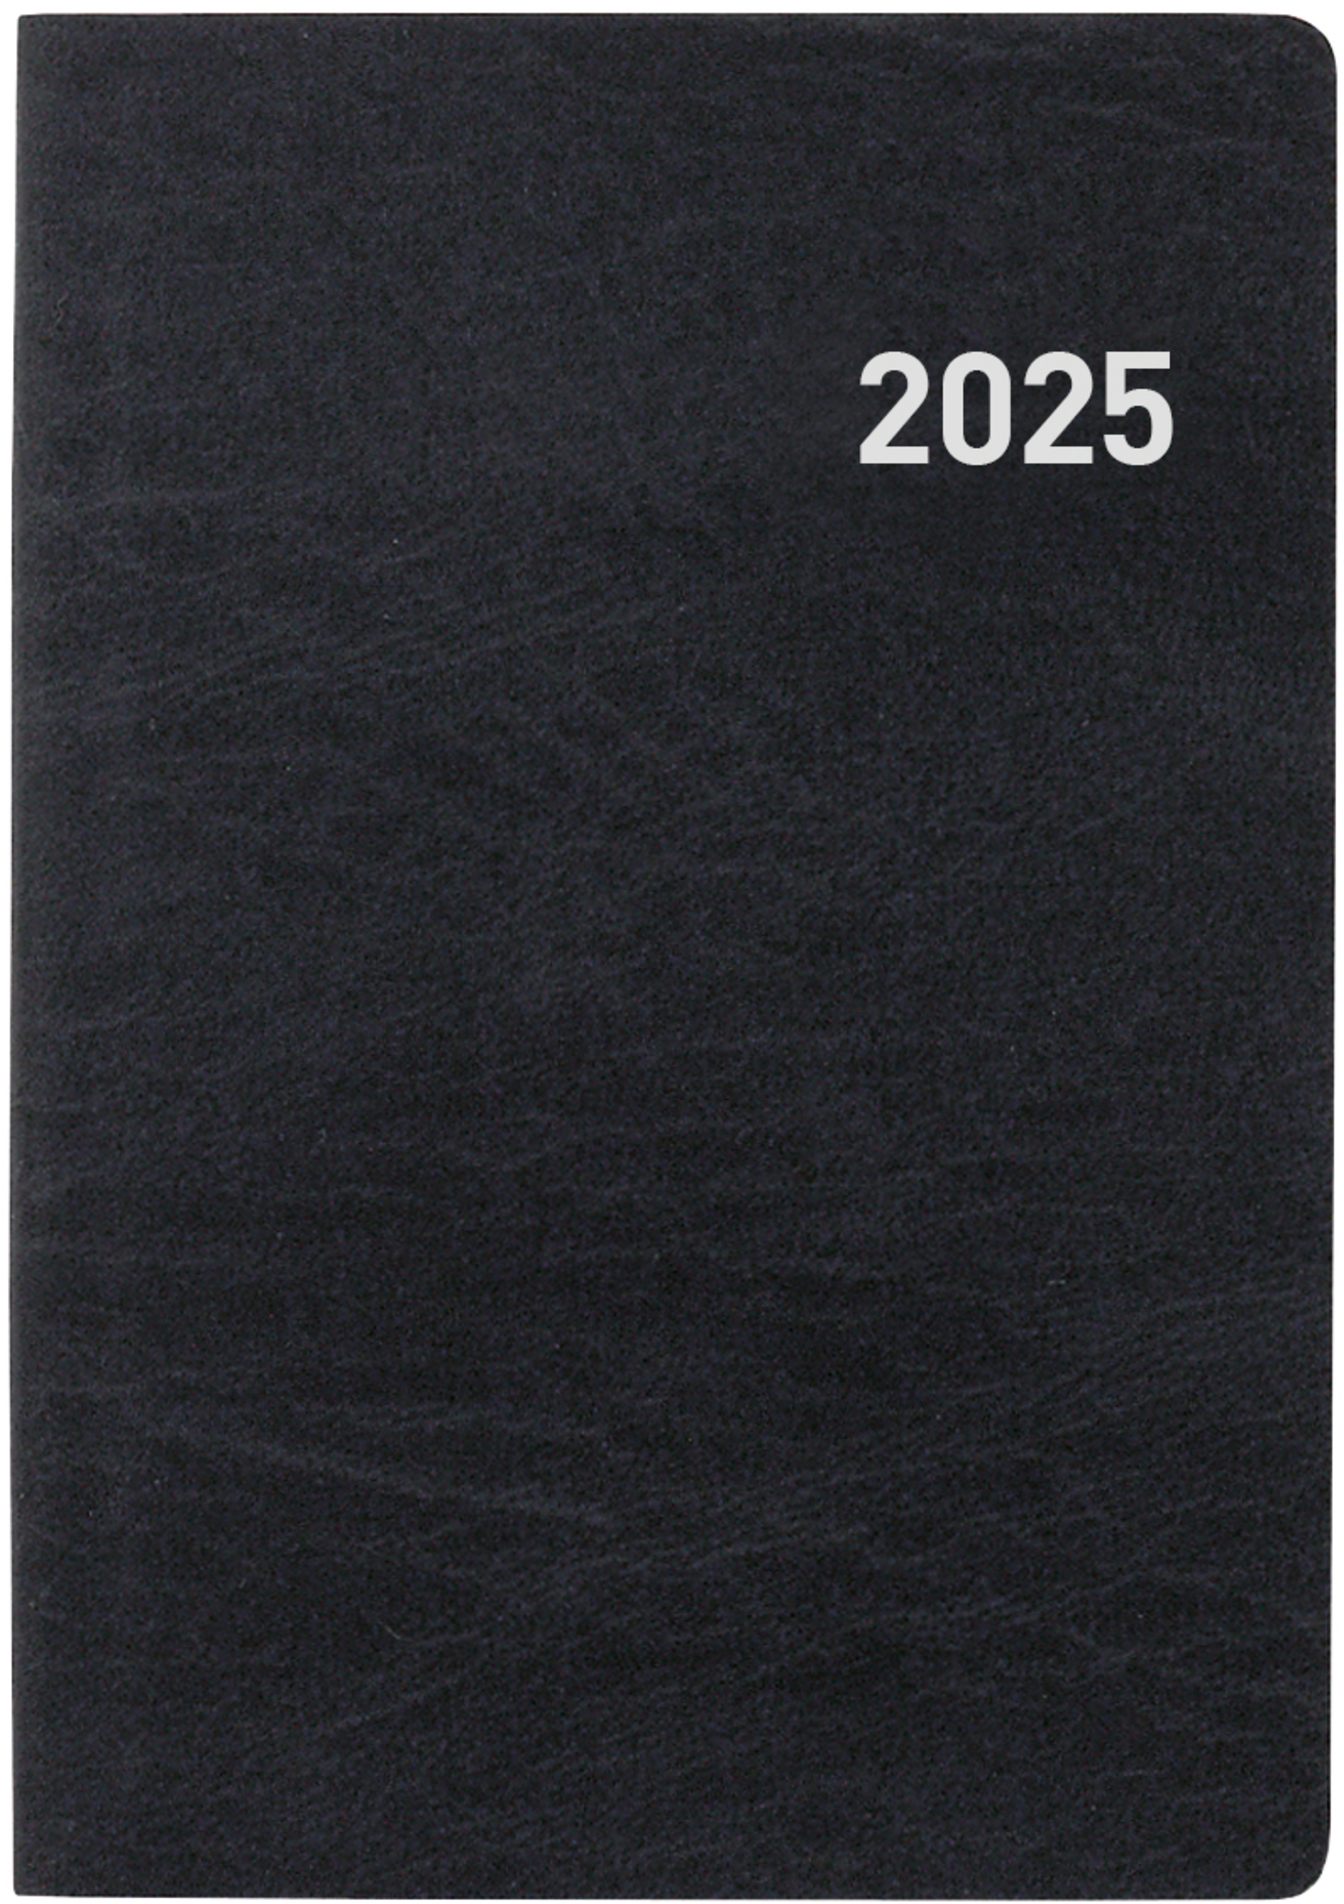 BIELLA Agenda Tell 2025 823201020025 2J/1P noir ML 8.5x12.5cm